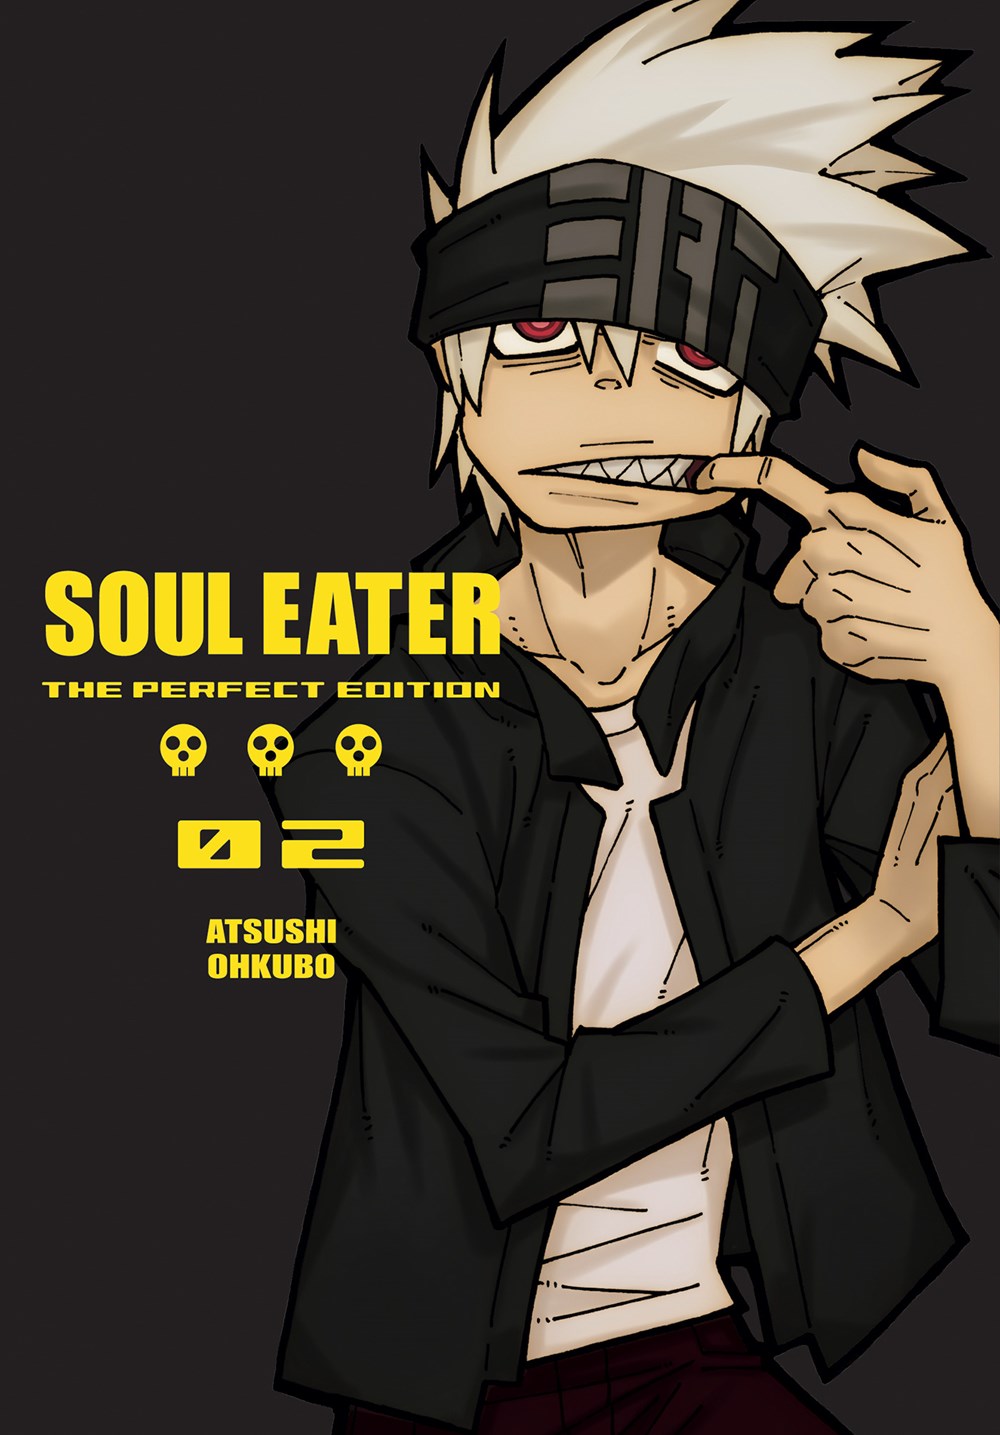 Soul Eater Filler List  The Ultimate Anime Filler Guide